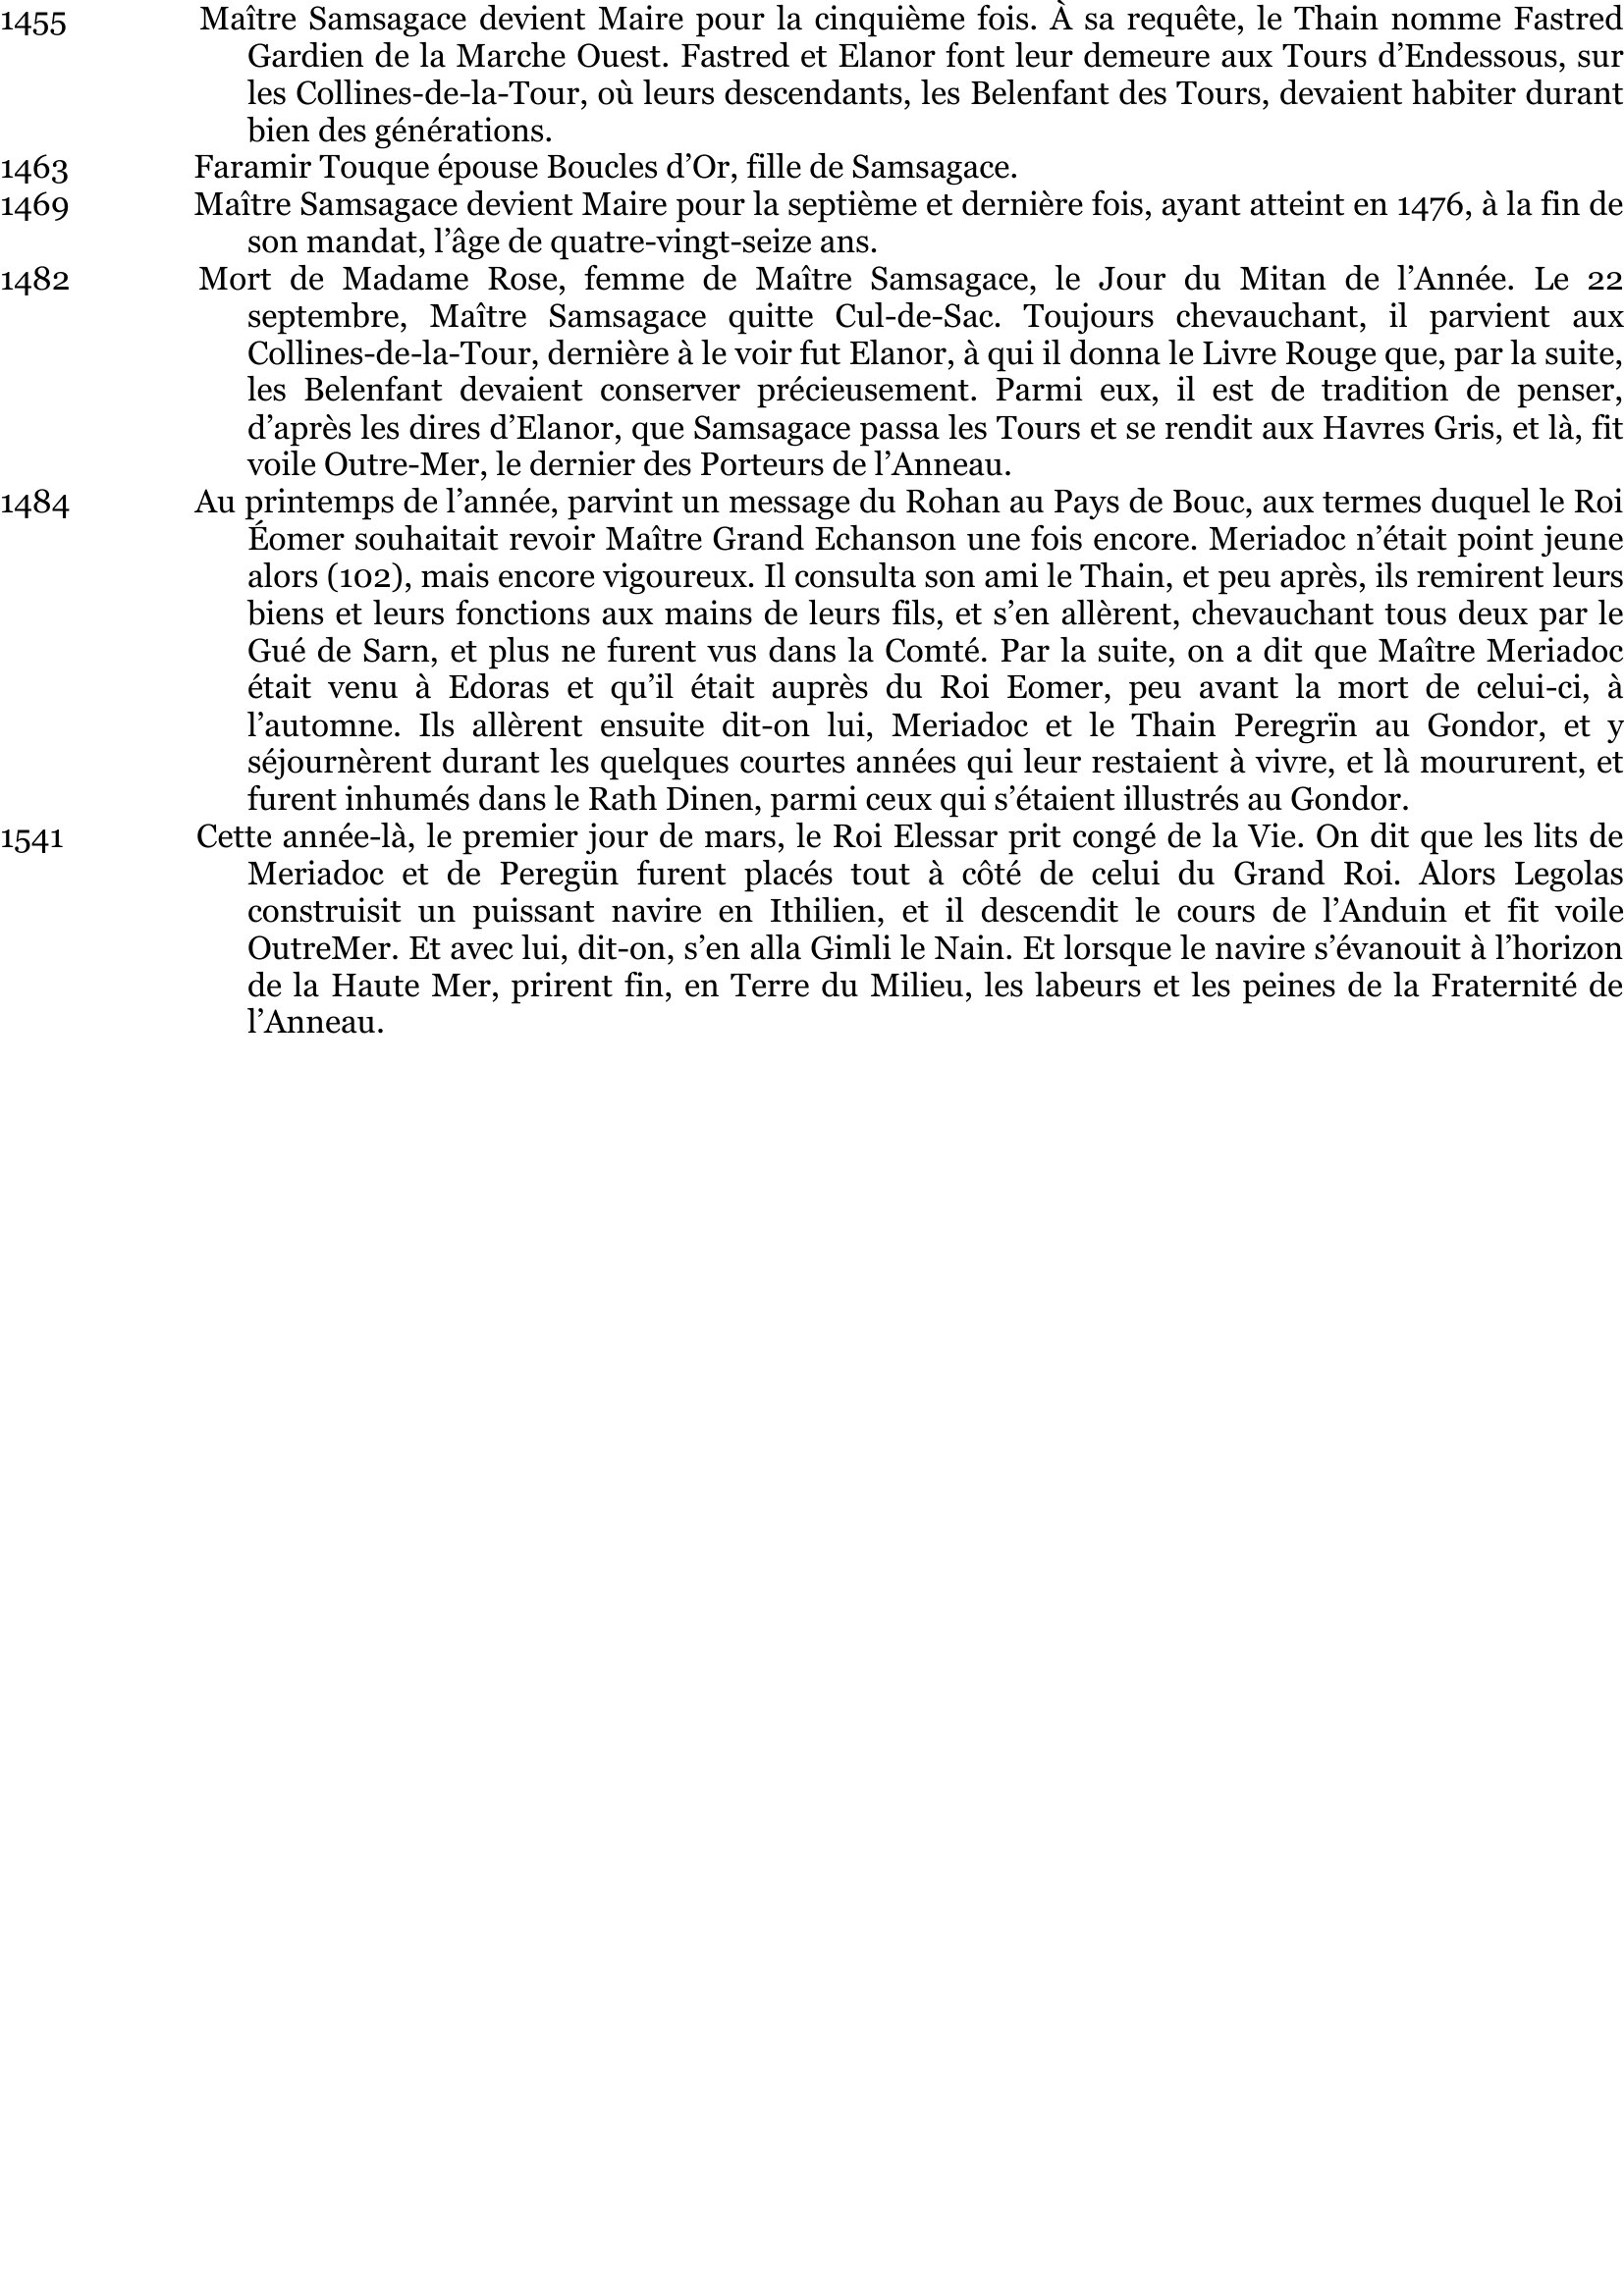 Prévisualisation du document 23
24
25

L'Armée sort de l'Ithilien.